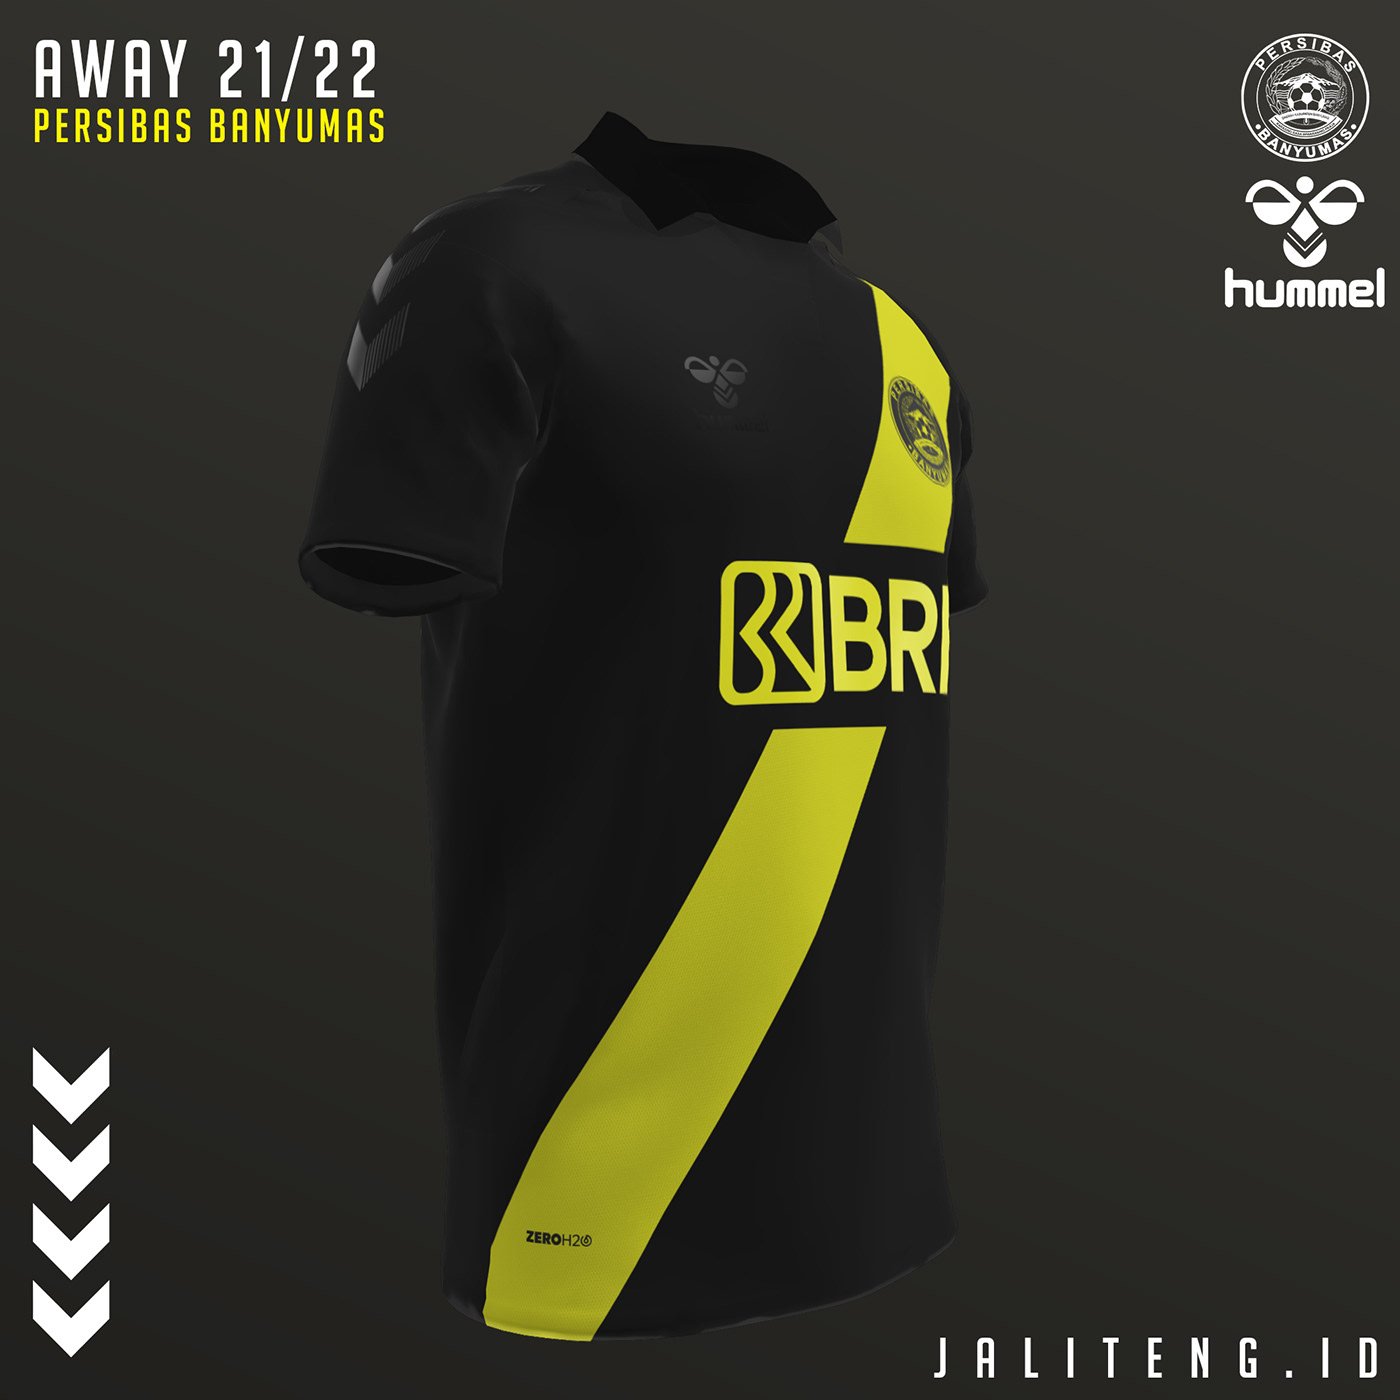 design fantasy jersey football football design Football kit jersey Jersey Design LASKAR BAWOR Persibas Soccer Kit